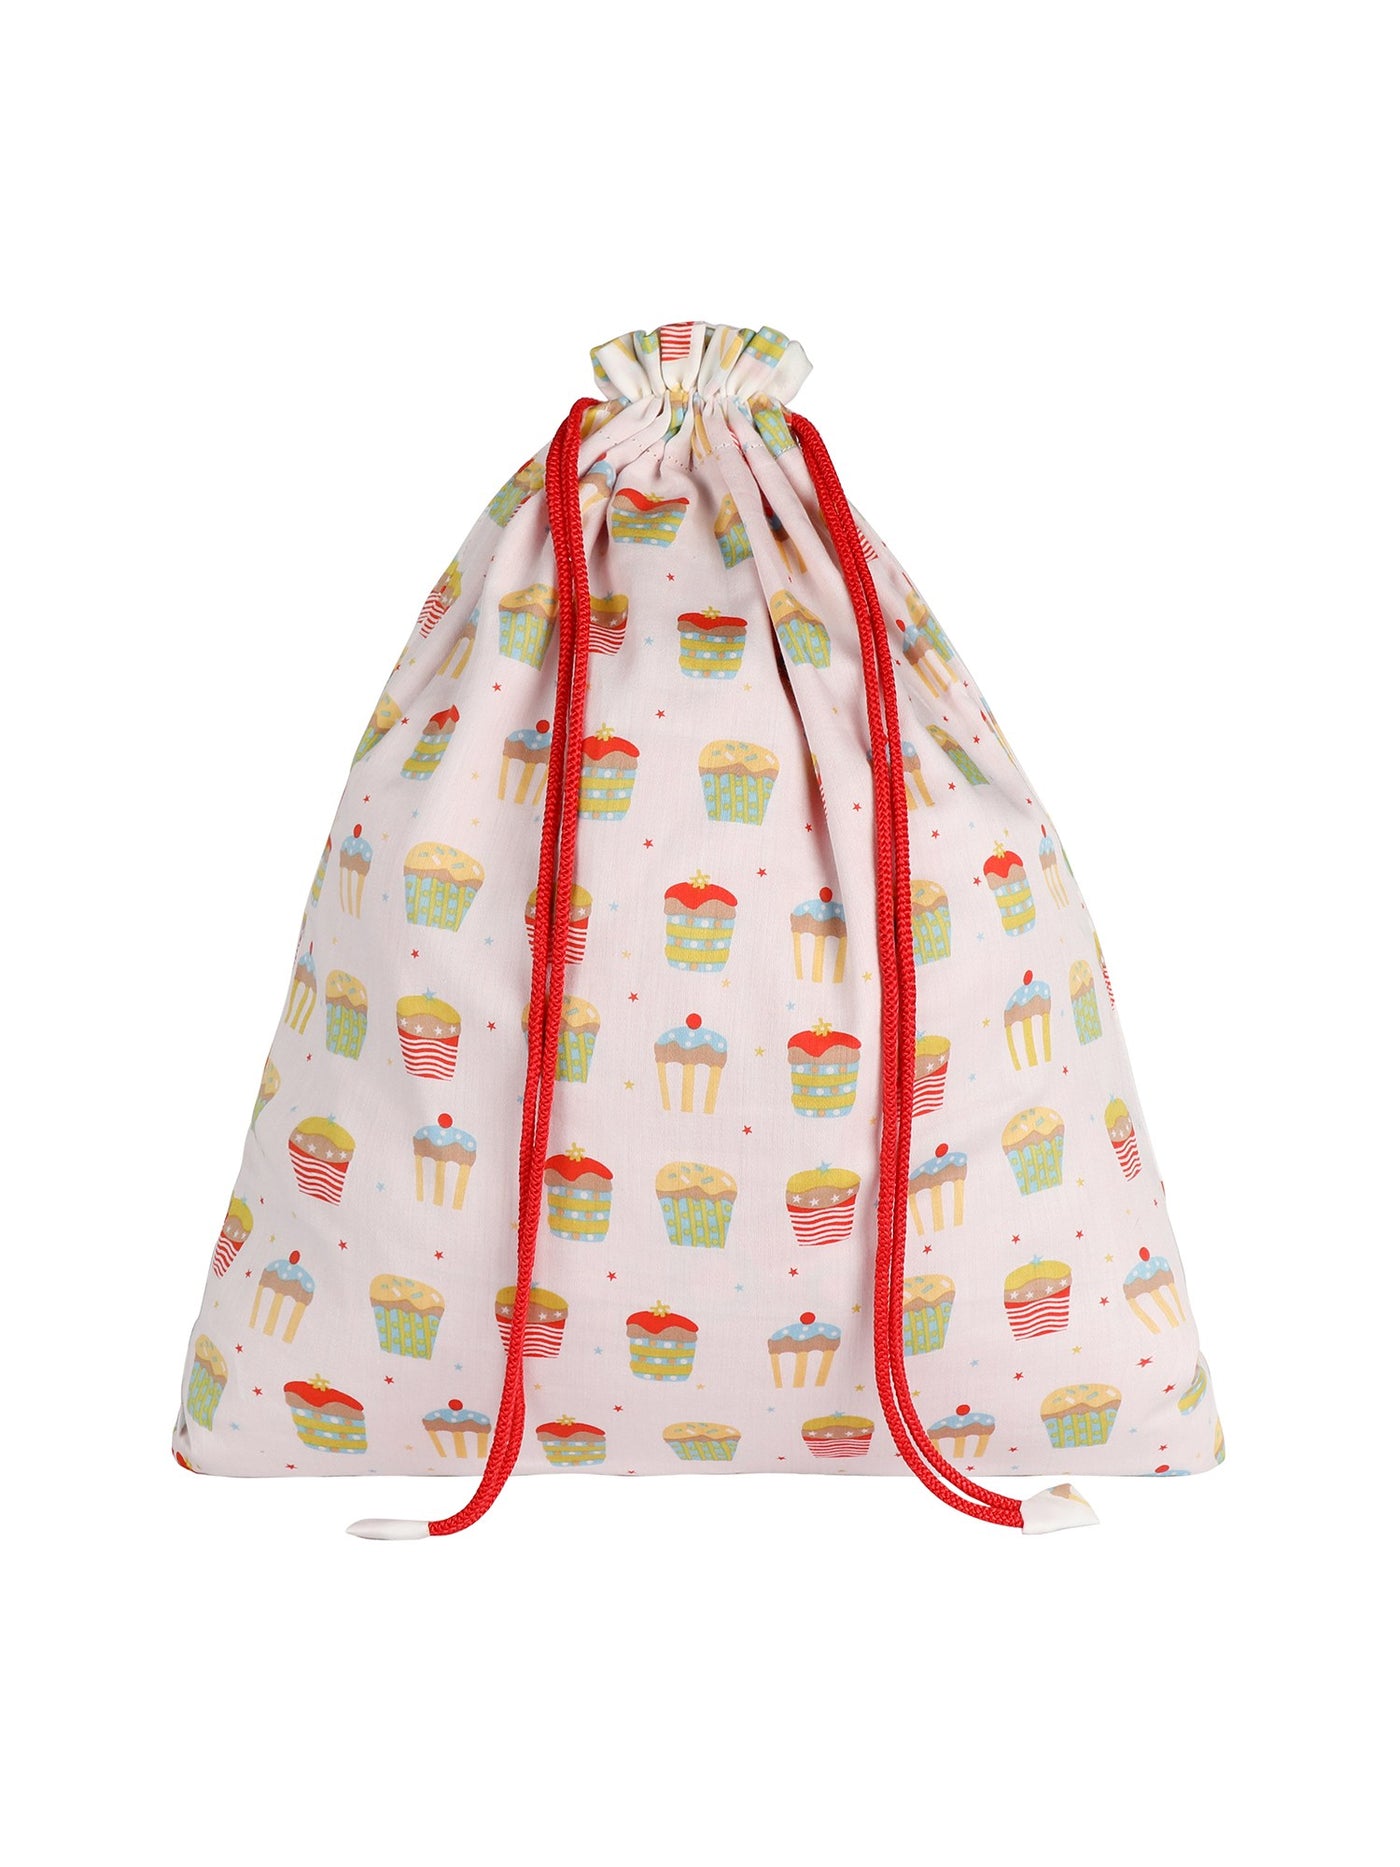 Cupcake Drawstring Bag